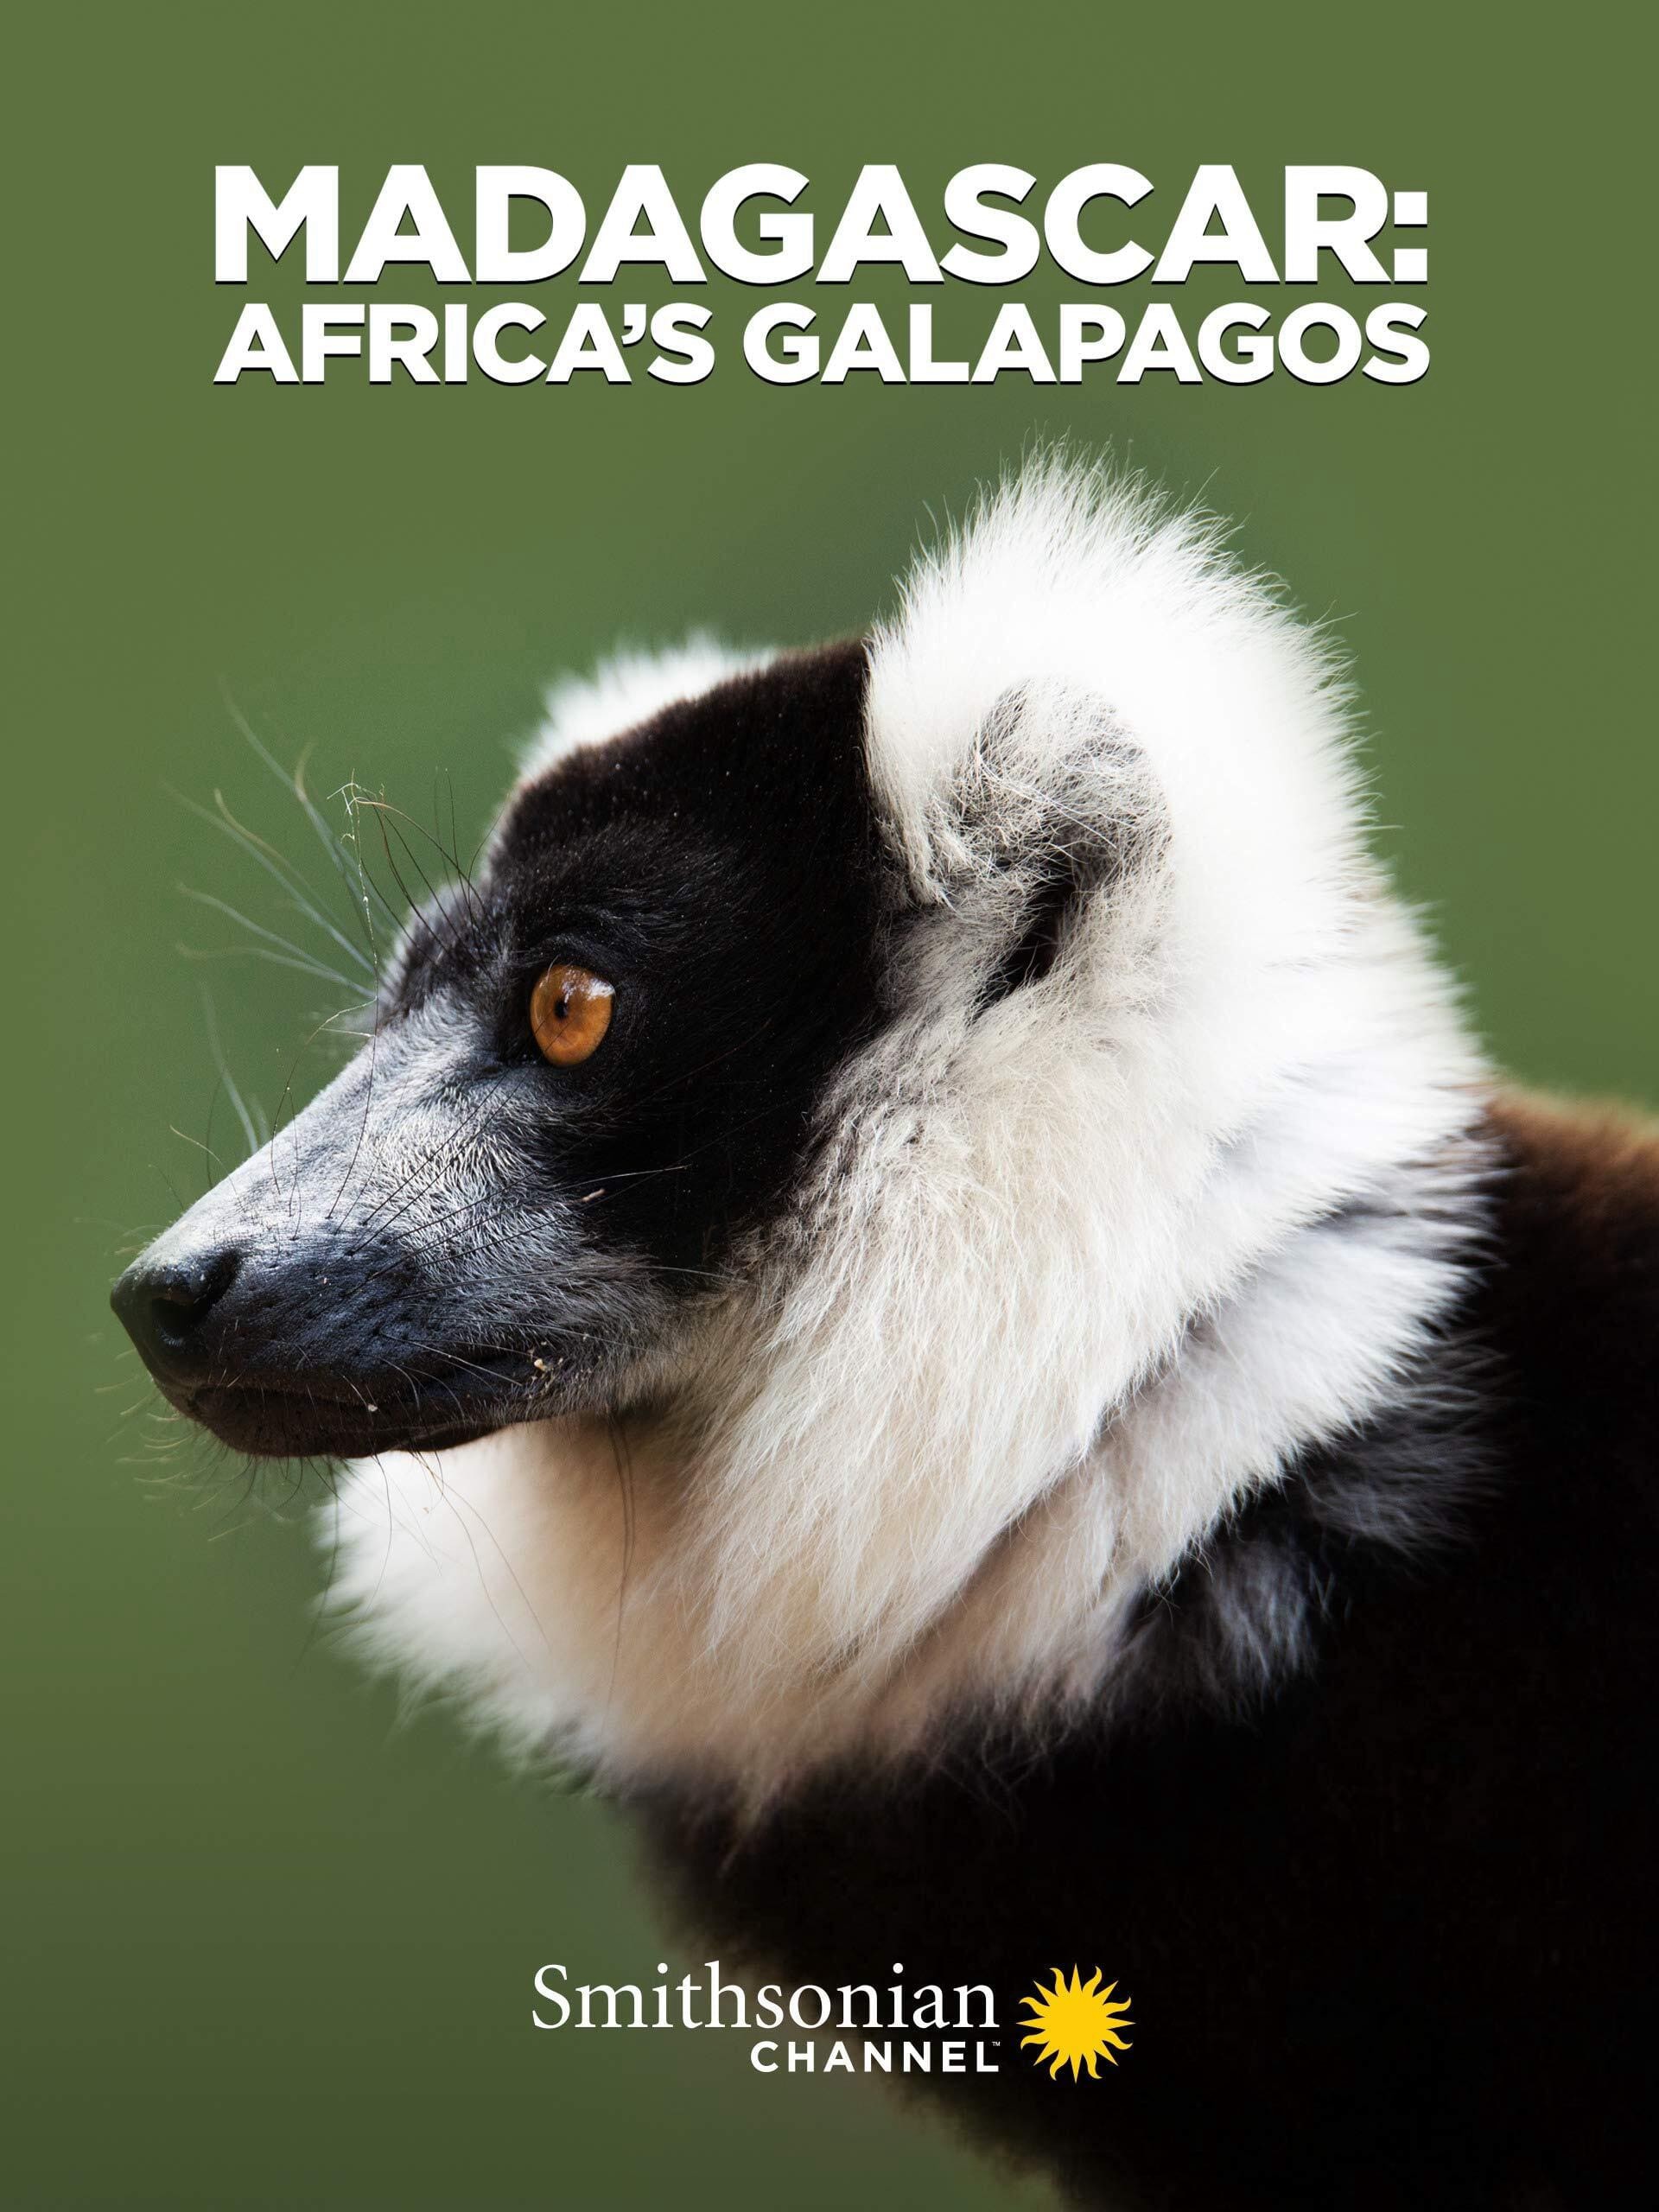 Madagascar: Africa's Galapagos | Madagascar: Africa's Galapagos (2019)